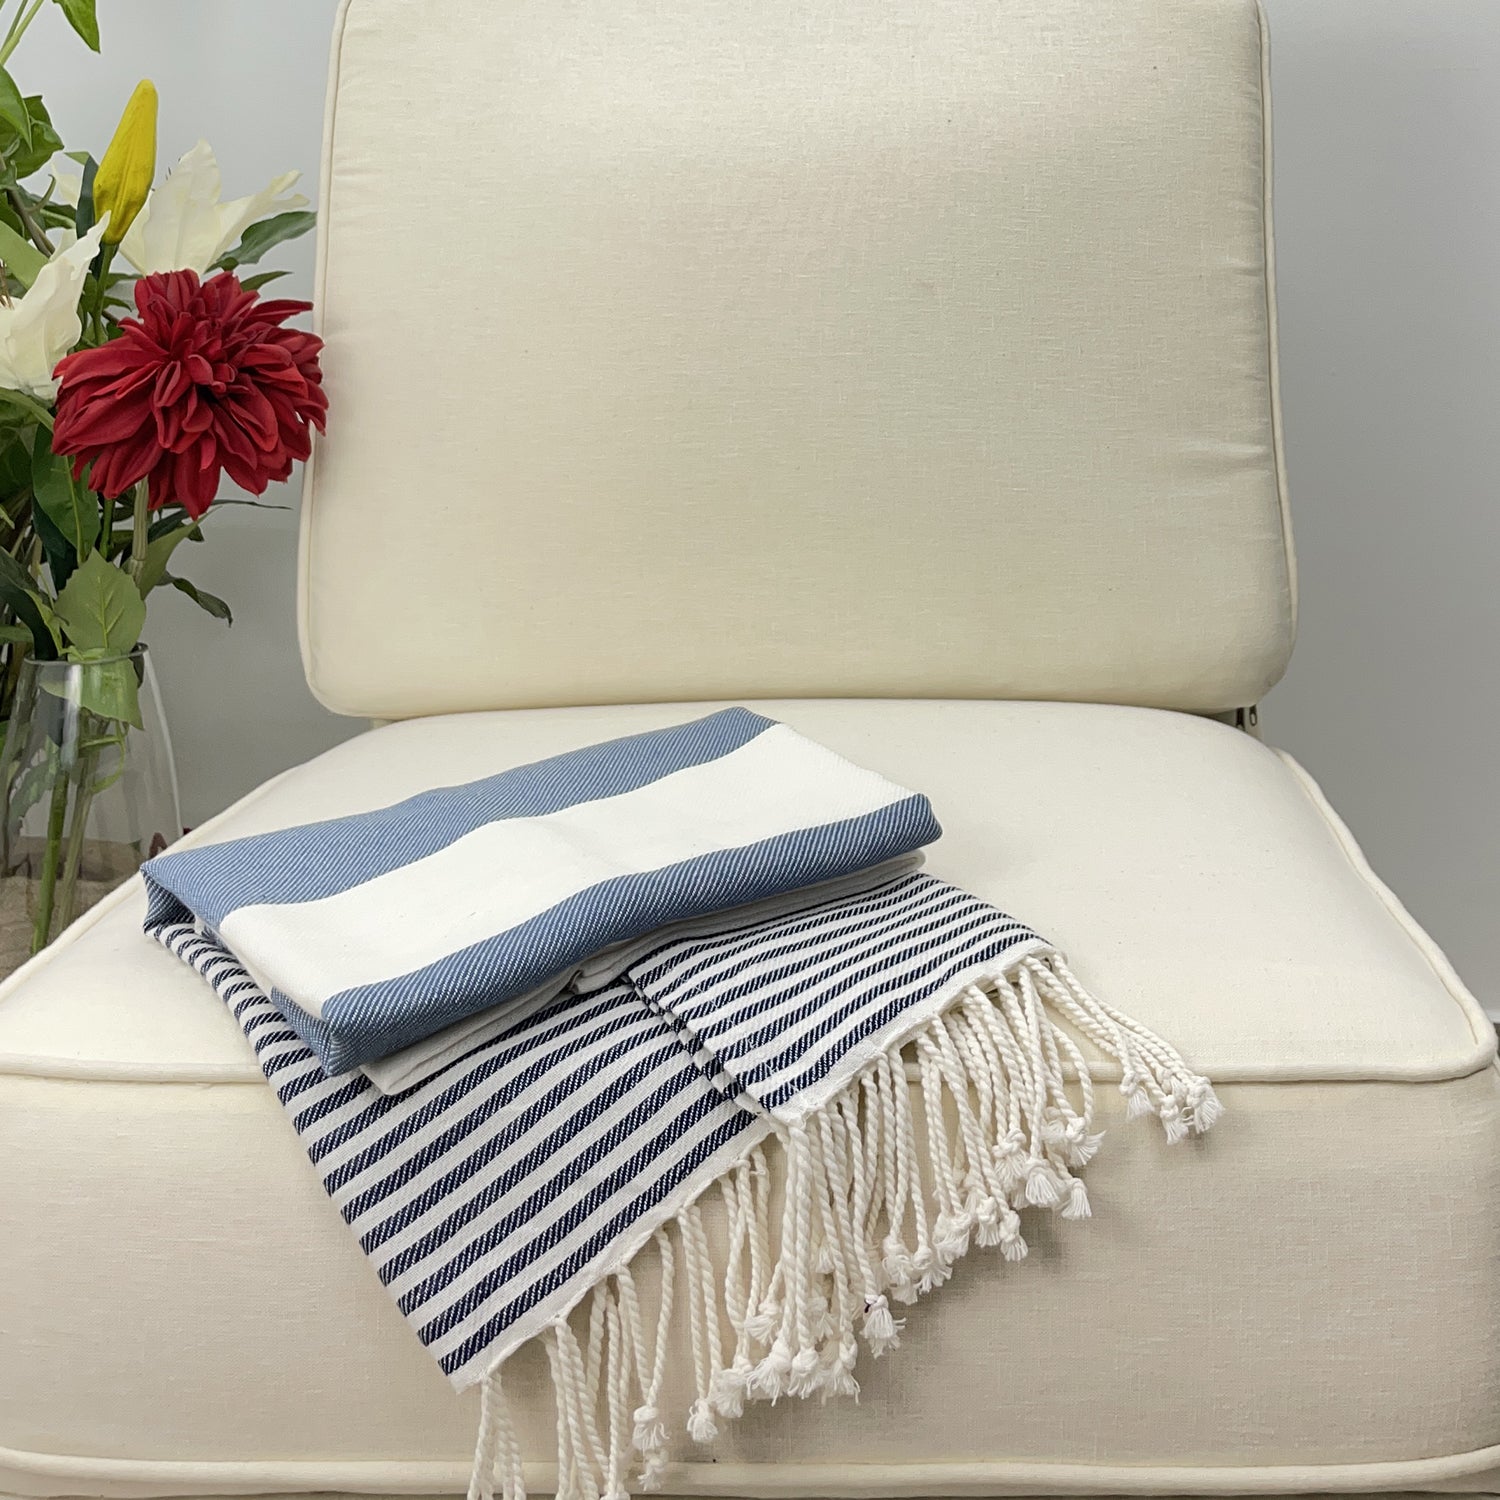 Avocado Linens Cotton Blend Sofa Throws - Blue & White Nautical Stripes